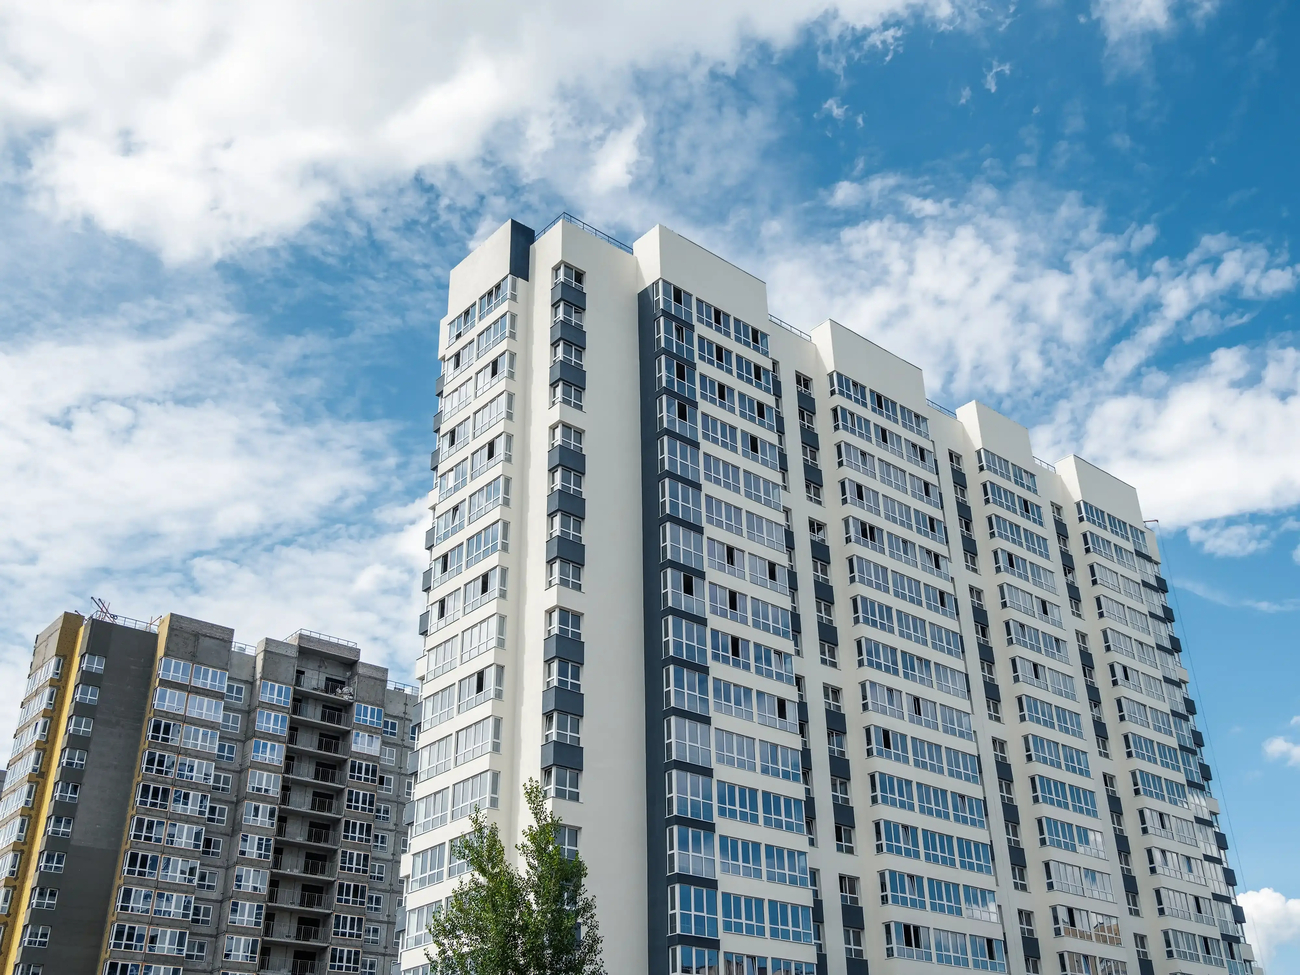 Construccion moderna barrio nuevo hermosos edificios nuevos pared coloreada fondo cielo azul nublado copiar espacio